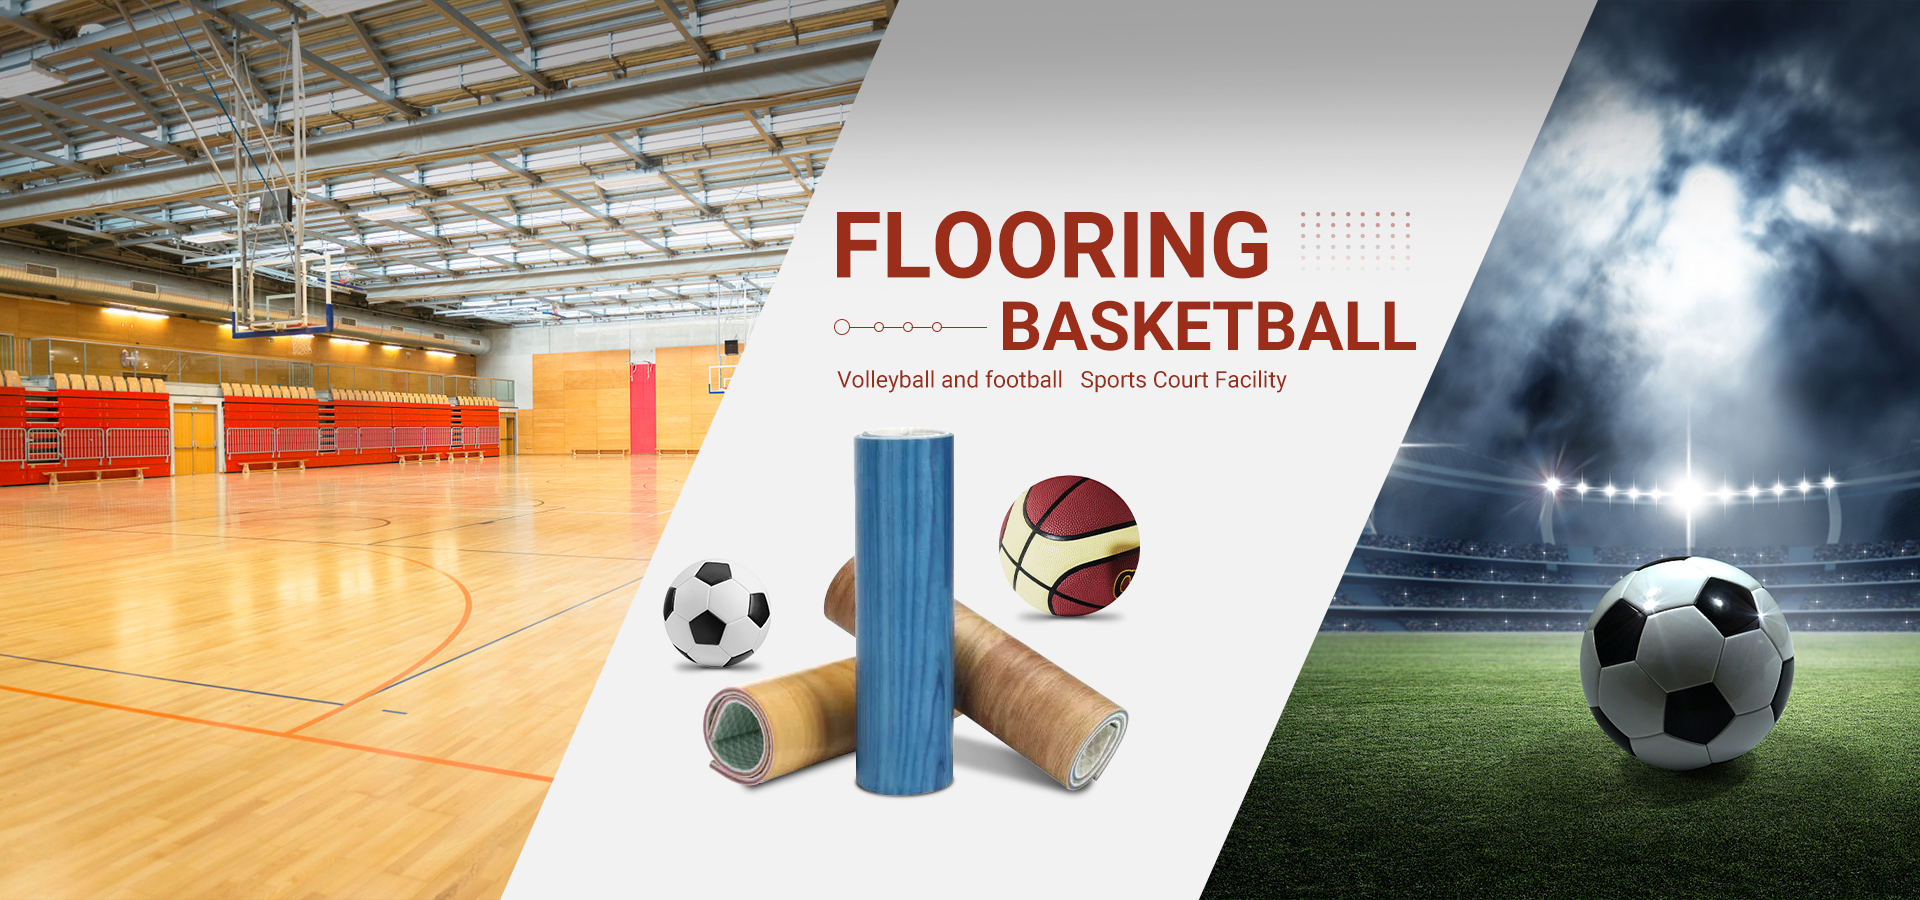 Boyut 7 Basketbol Eğitim Oyunu Özel PVC Basketbol Topu